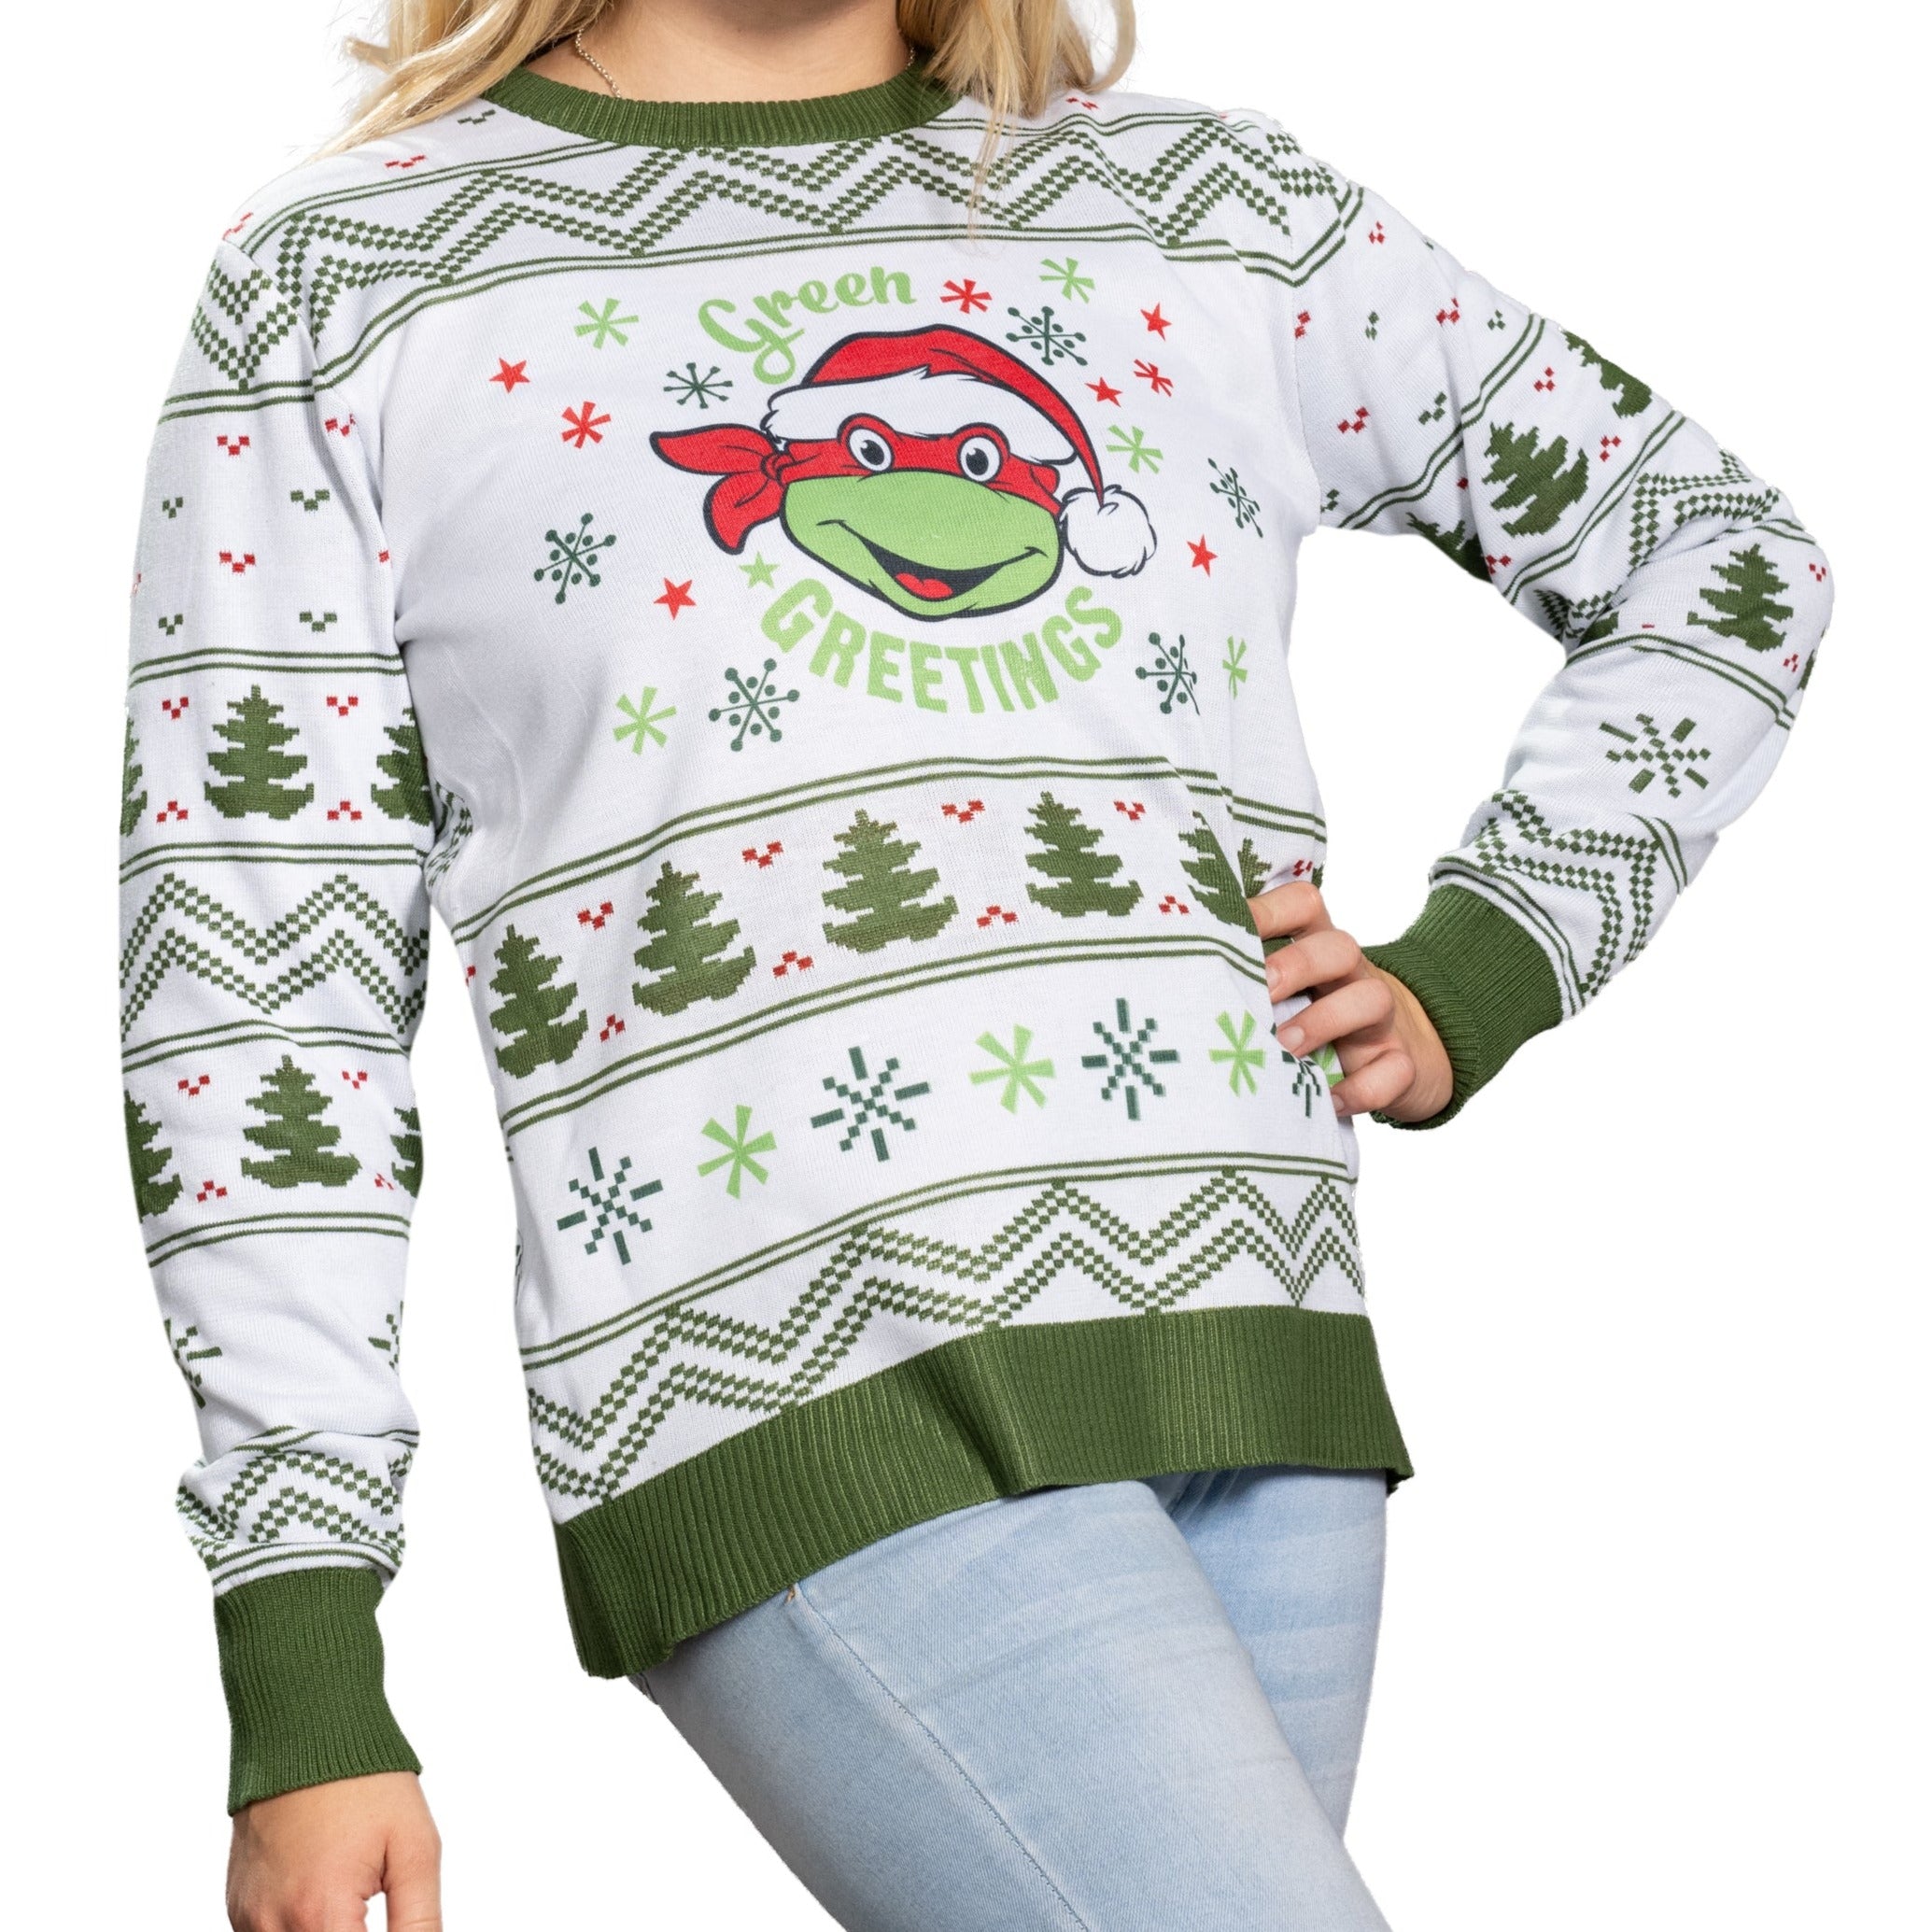 Teenage Mutant Ninja Turtles Christmas Sweaters